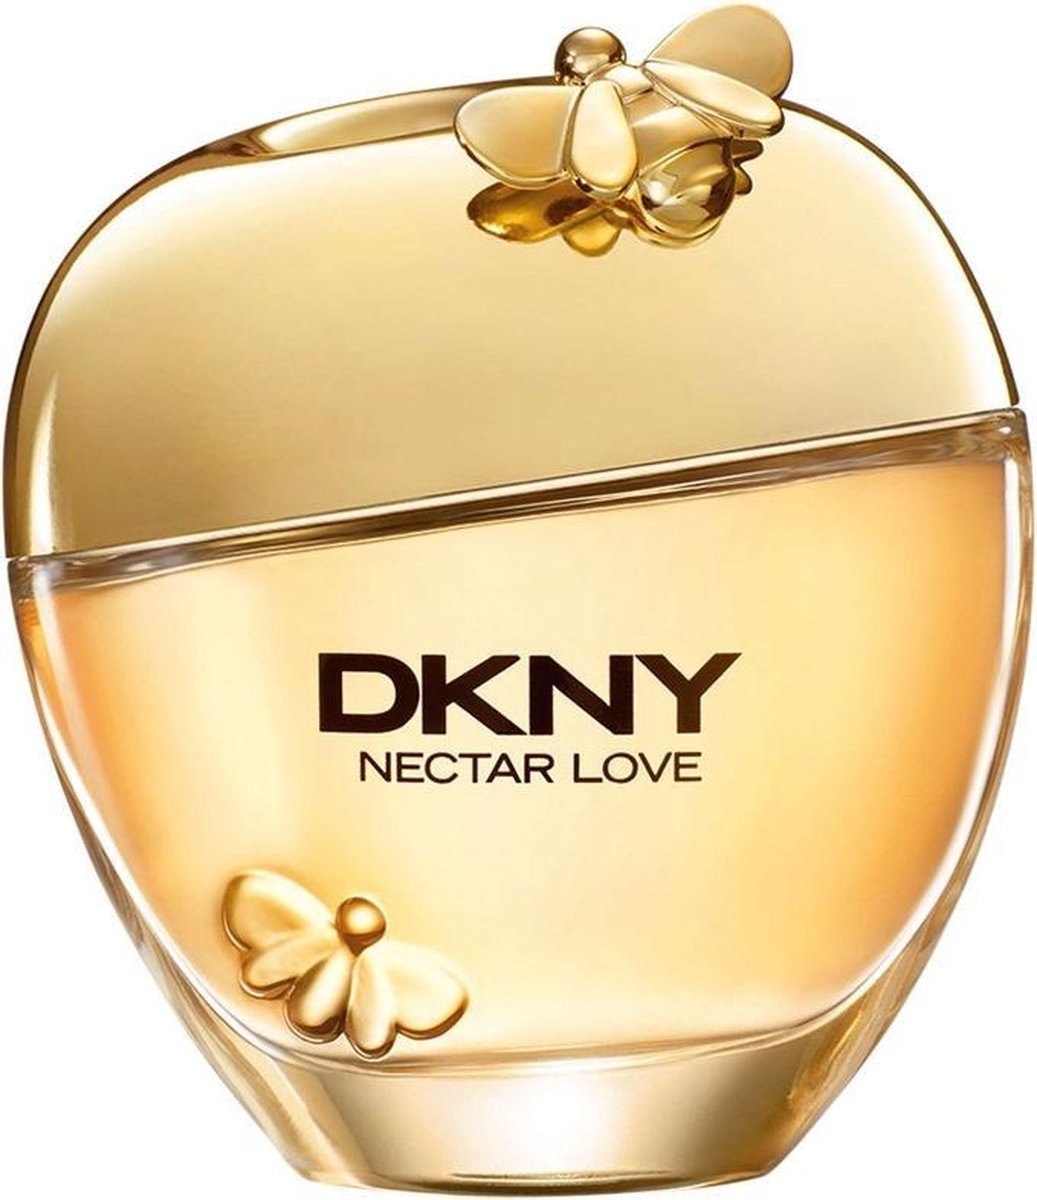 DKNY Nectar Love - 100 ml - Eau de Parfum